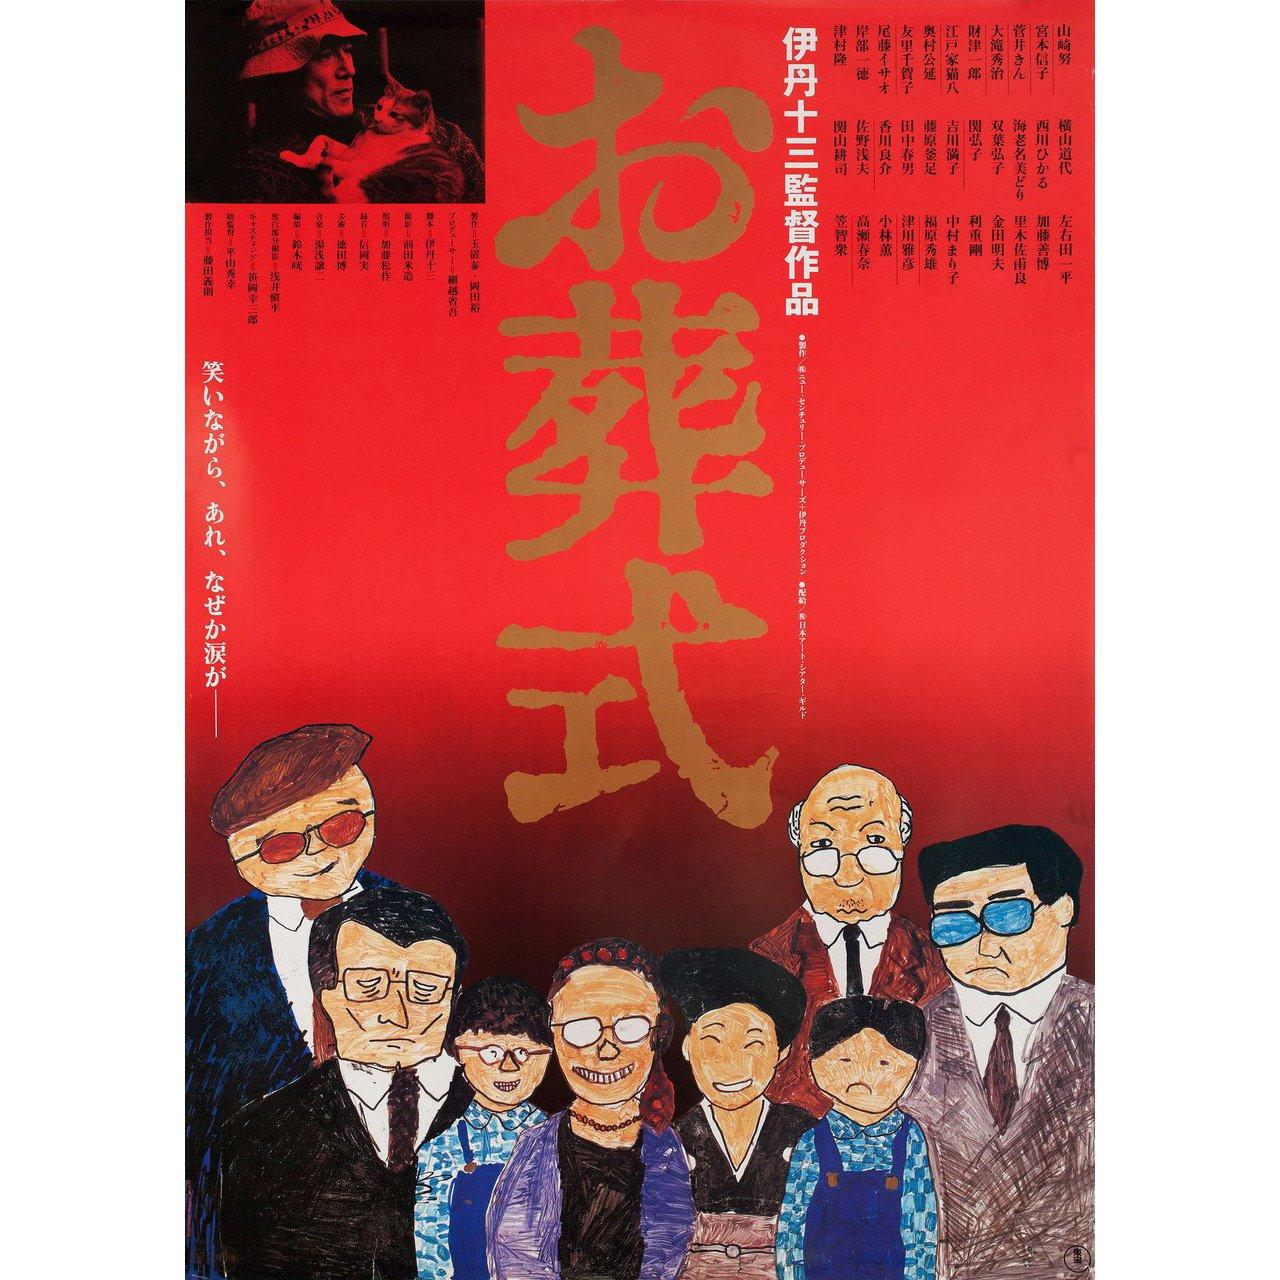 Originales japanisches B2-Plakat von Manpei Ikeuchi aus dem Jahr 1984 für den Film The Funeral unter der Regie von Juzo Itami mit Tsutomu Yamazaki / Nobuko Miyamoto / Kin Sugai / Hideji Otaki. Sehr guter Zustand, gerollt. Bitte beachten Sie: Die